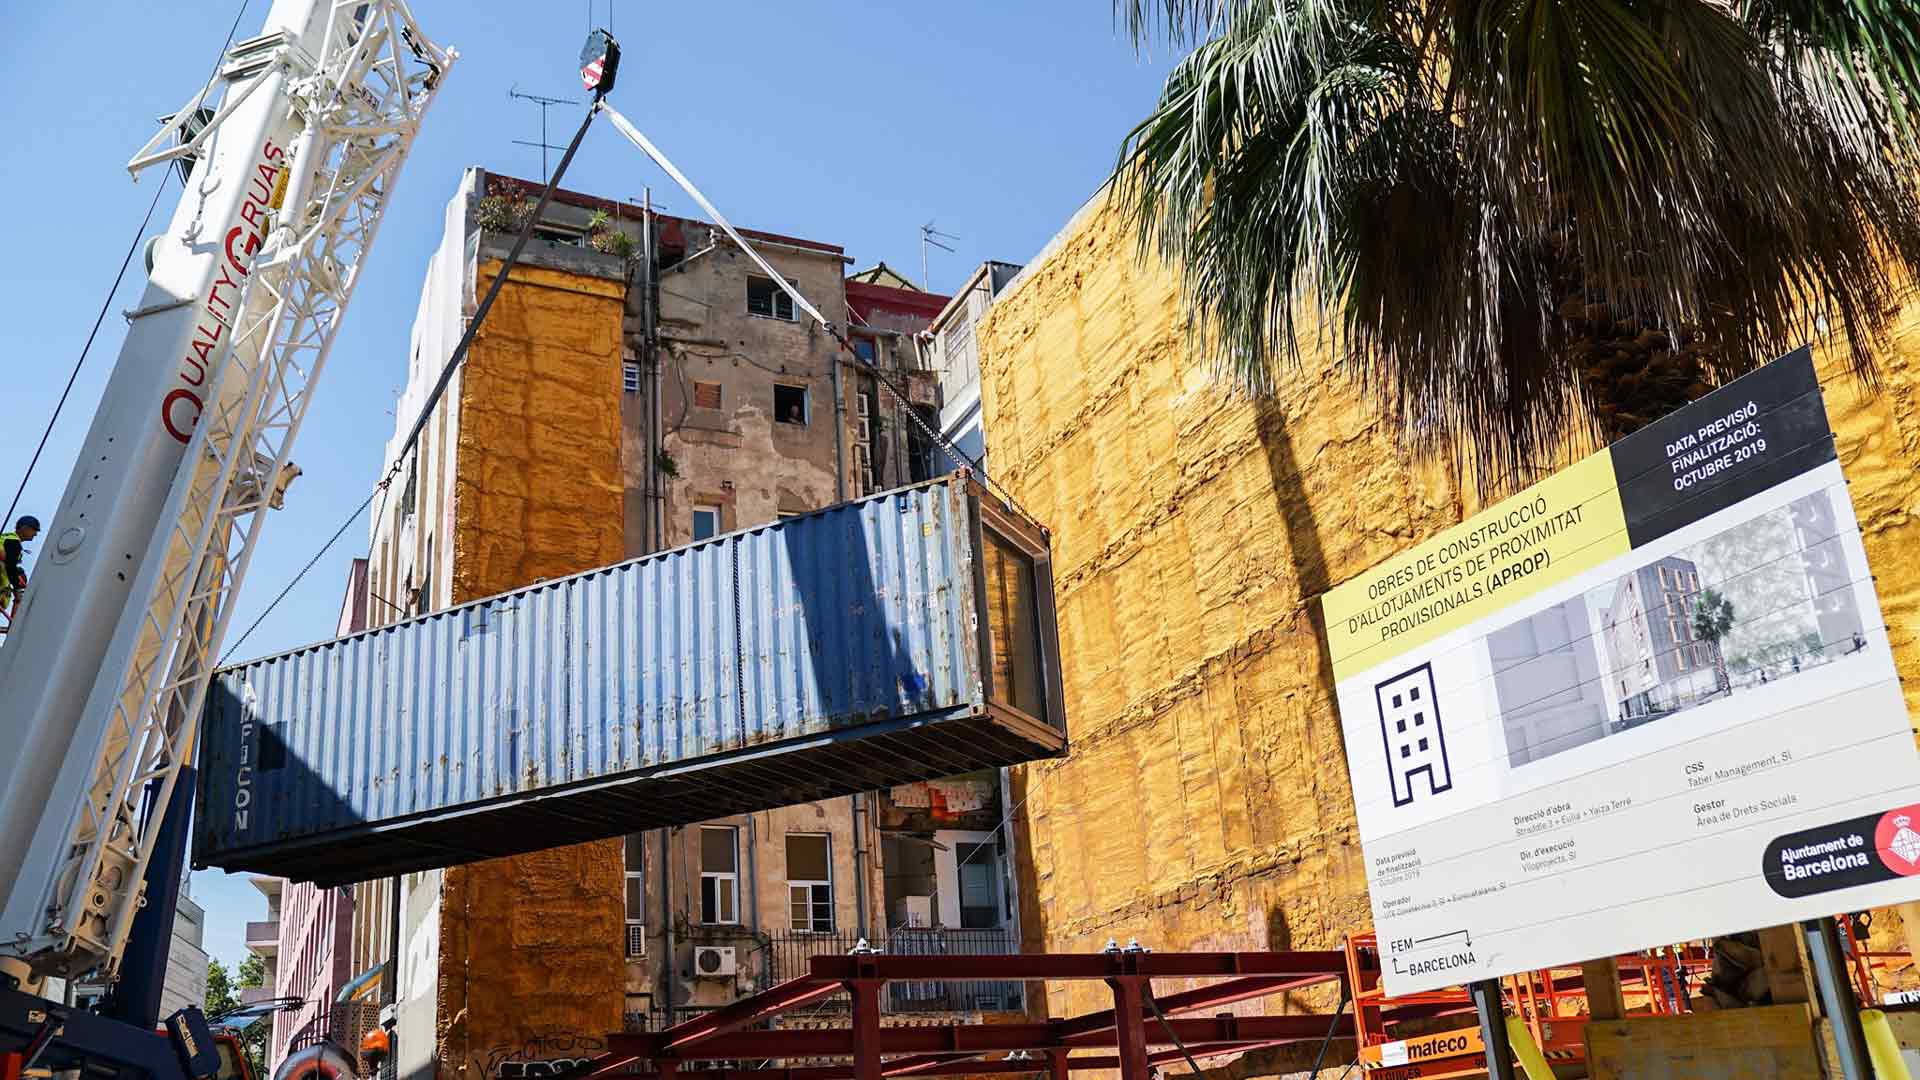 Pisos construidos con contenedores de barco en Barcelona para familias en riesgo de vulnerabilidad